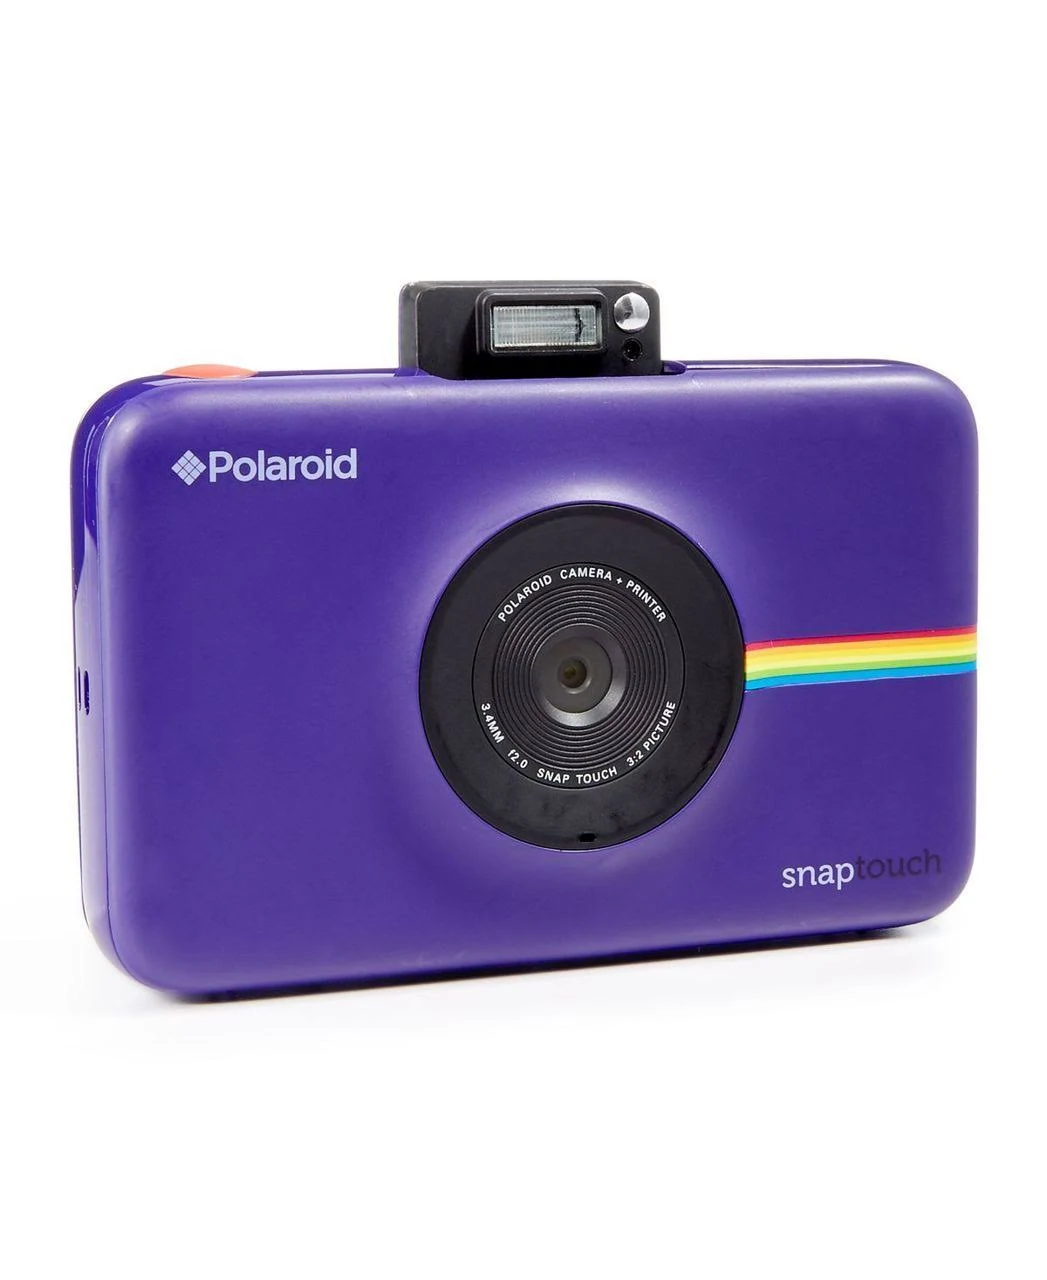 Polaroid Cyfrowy aparat fotograficzny Snap Touch z natychmiastowym drukiem i wyświetlaczem LCD (fioletowy) z technologią druku Zink Zero Ink